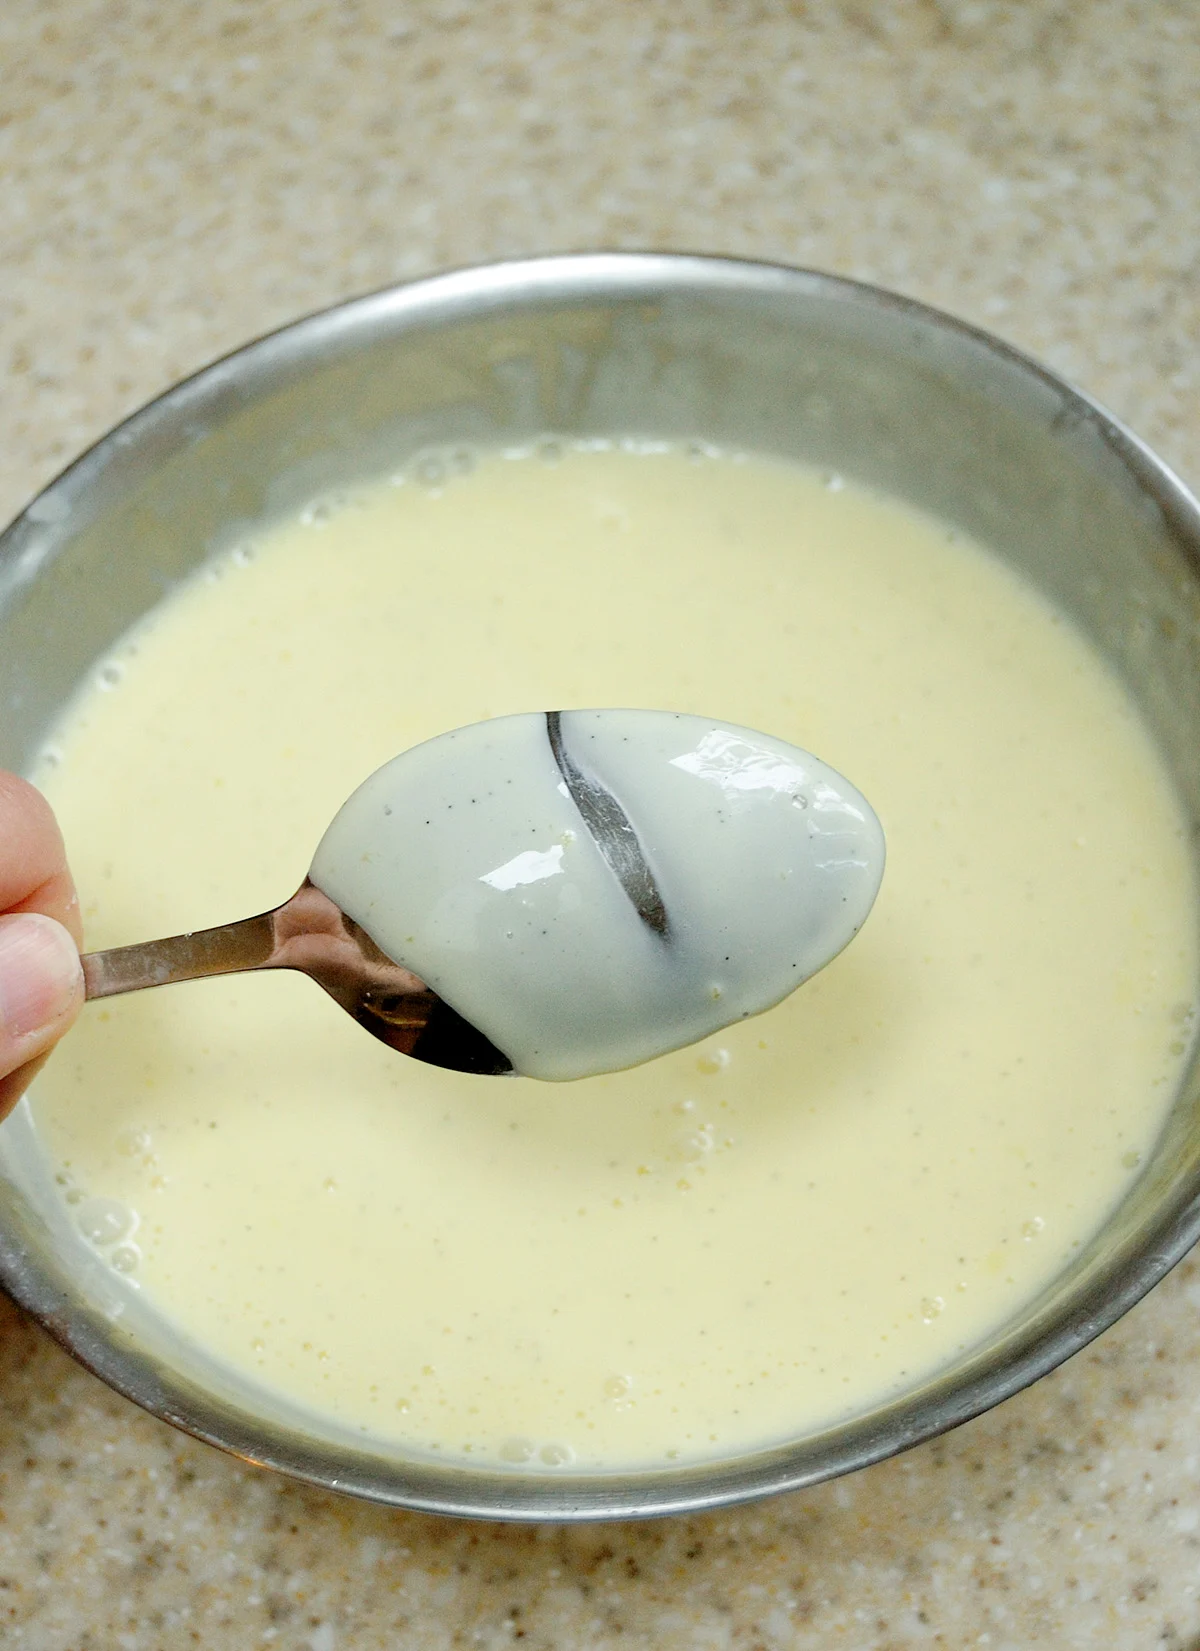 Custard sauce coating a spoon.